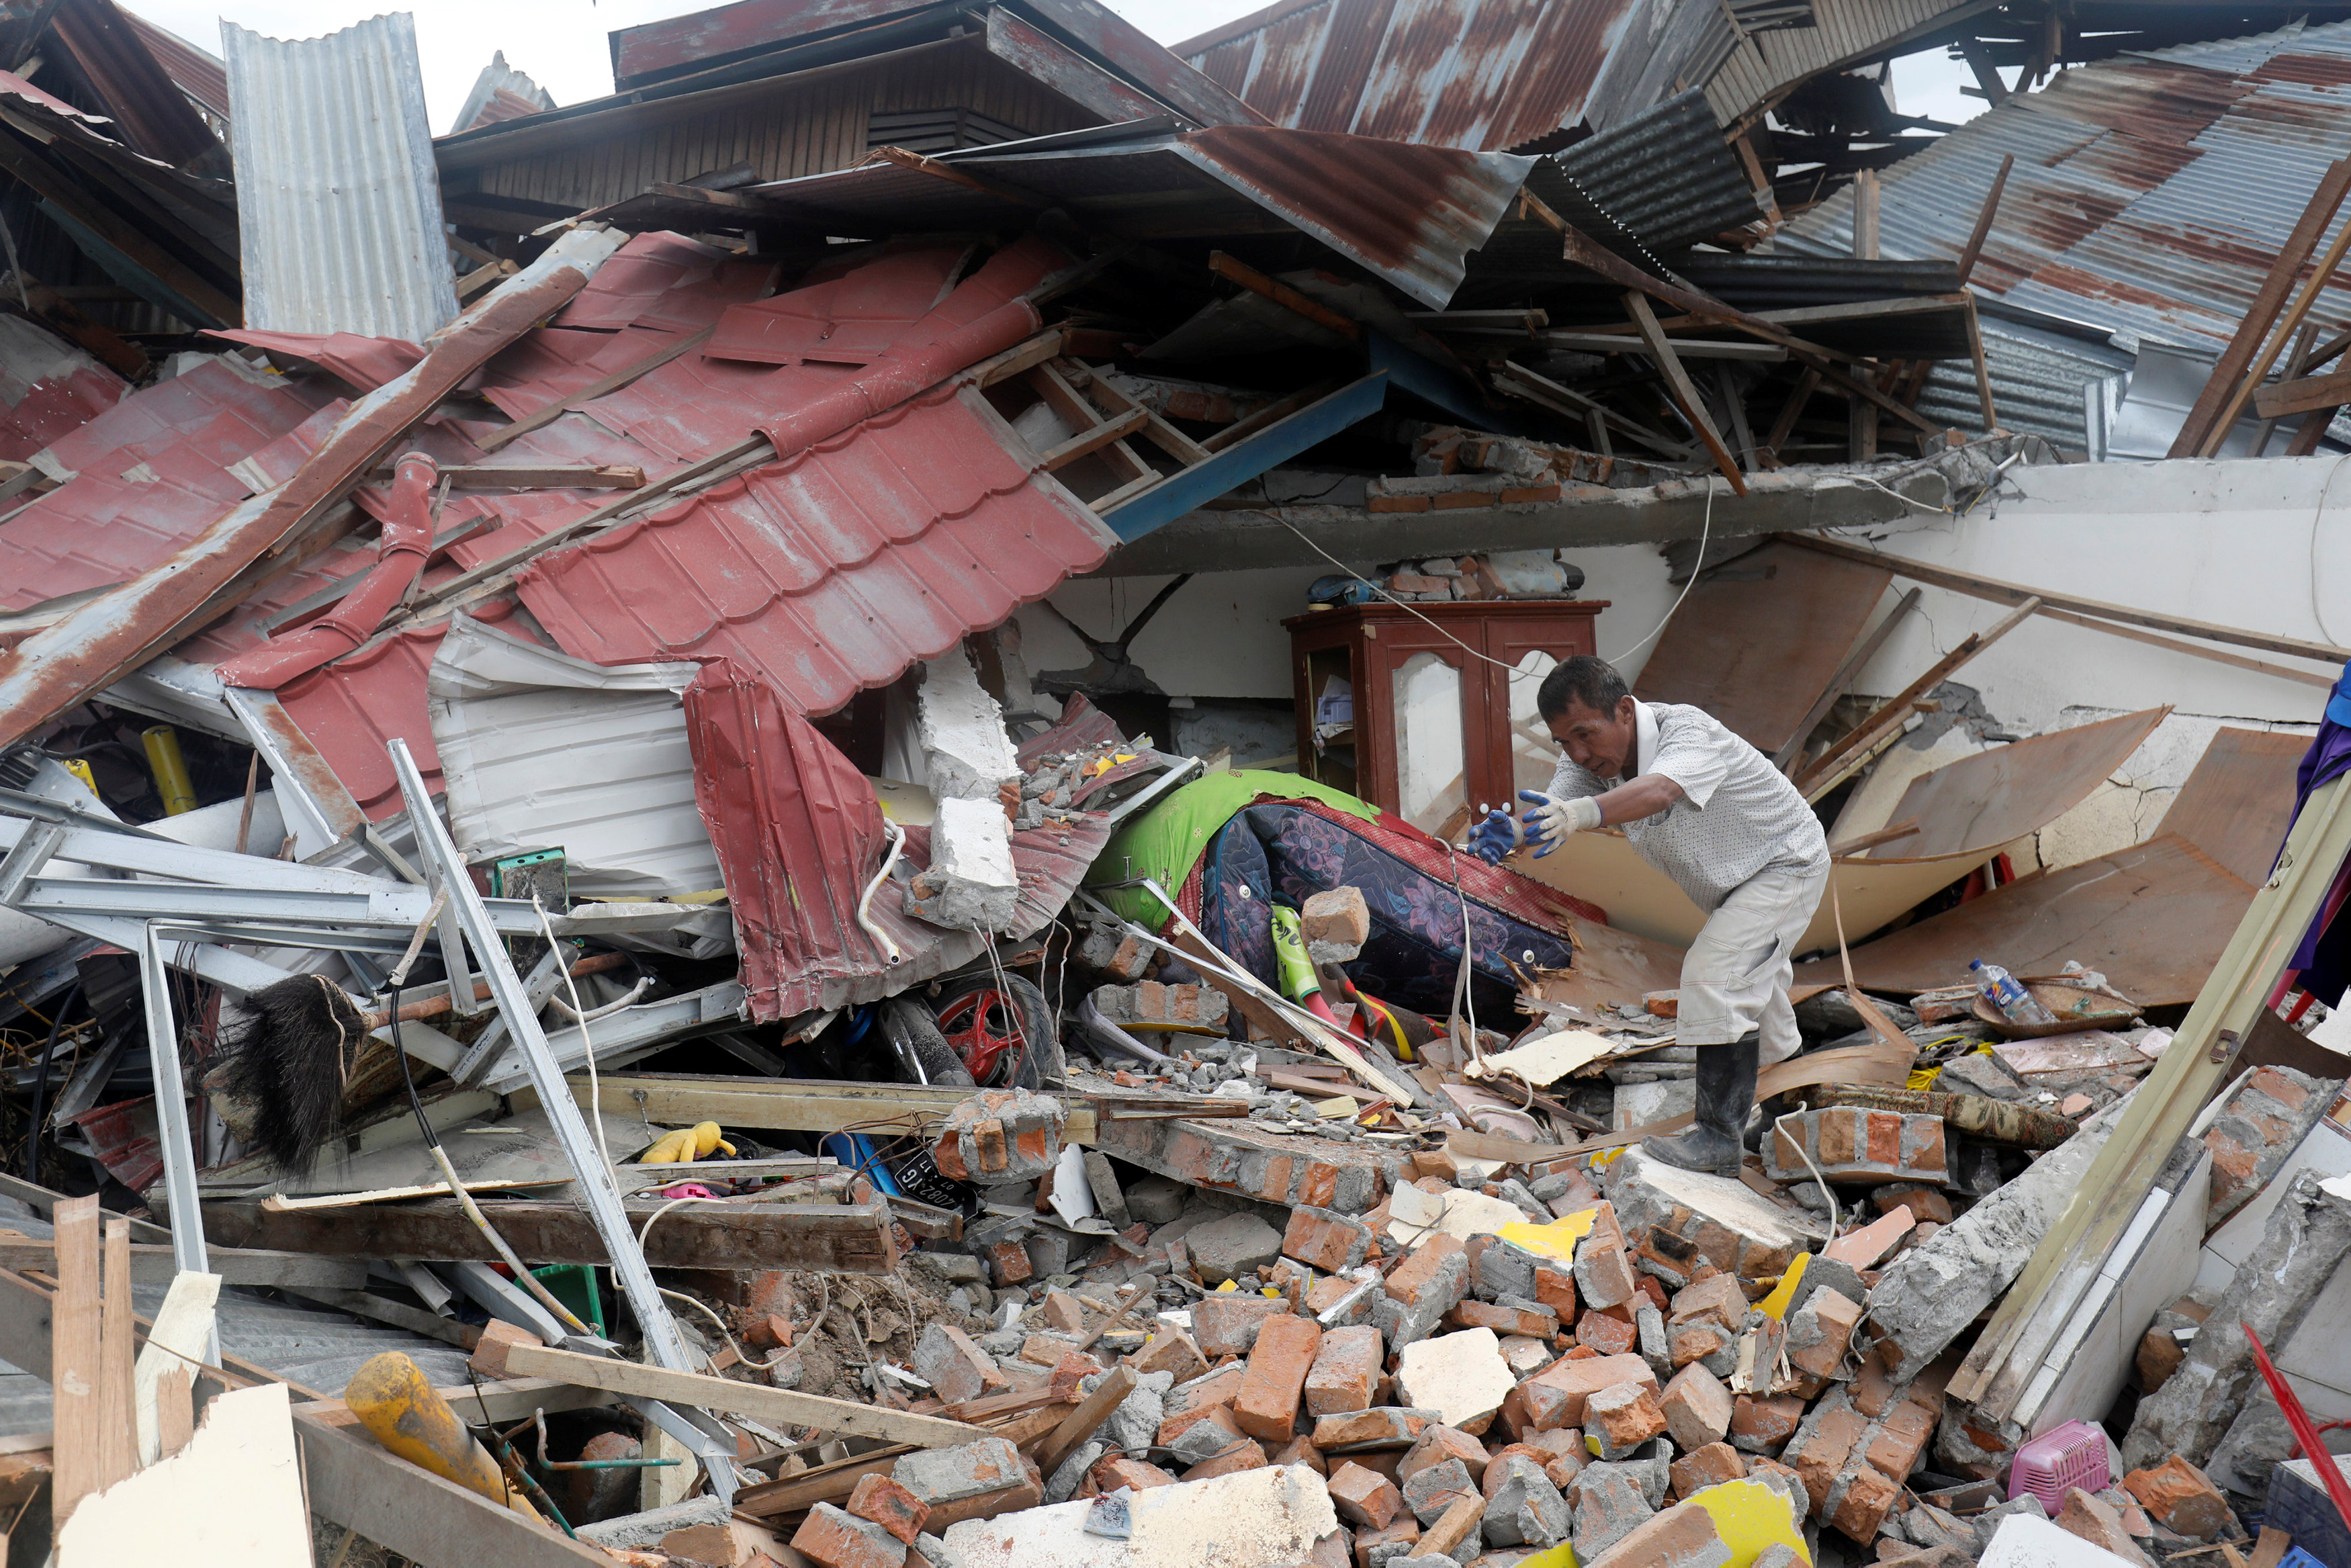 رجل يحاول إزالة حطام منزله المنهار إثر الزلزال في سولاويسي في إندونيسيا، 11 أكتوبر 2018. دارين وايتسايد/ رويترز